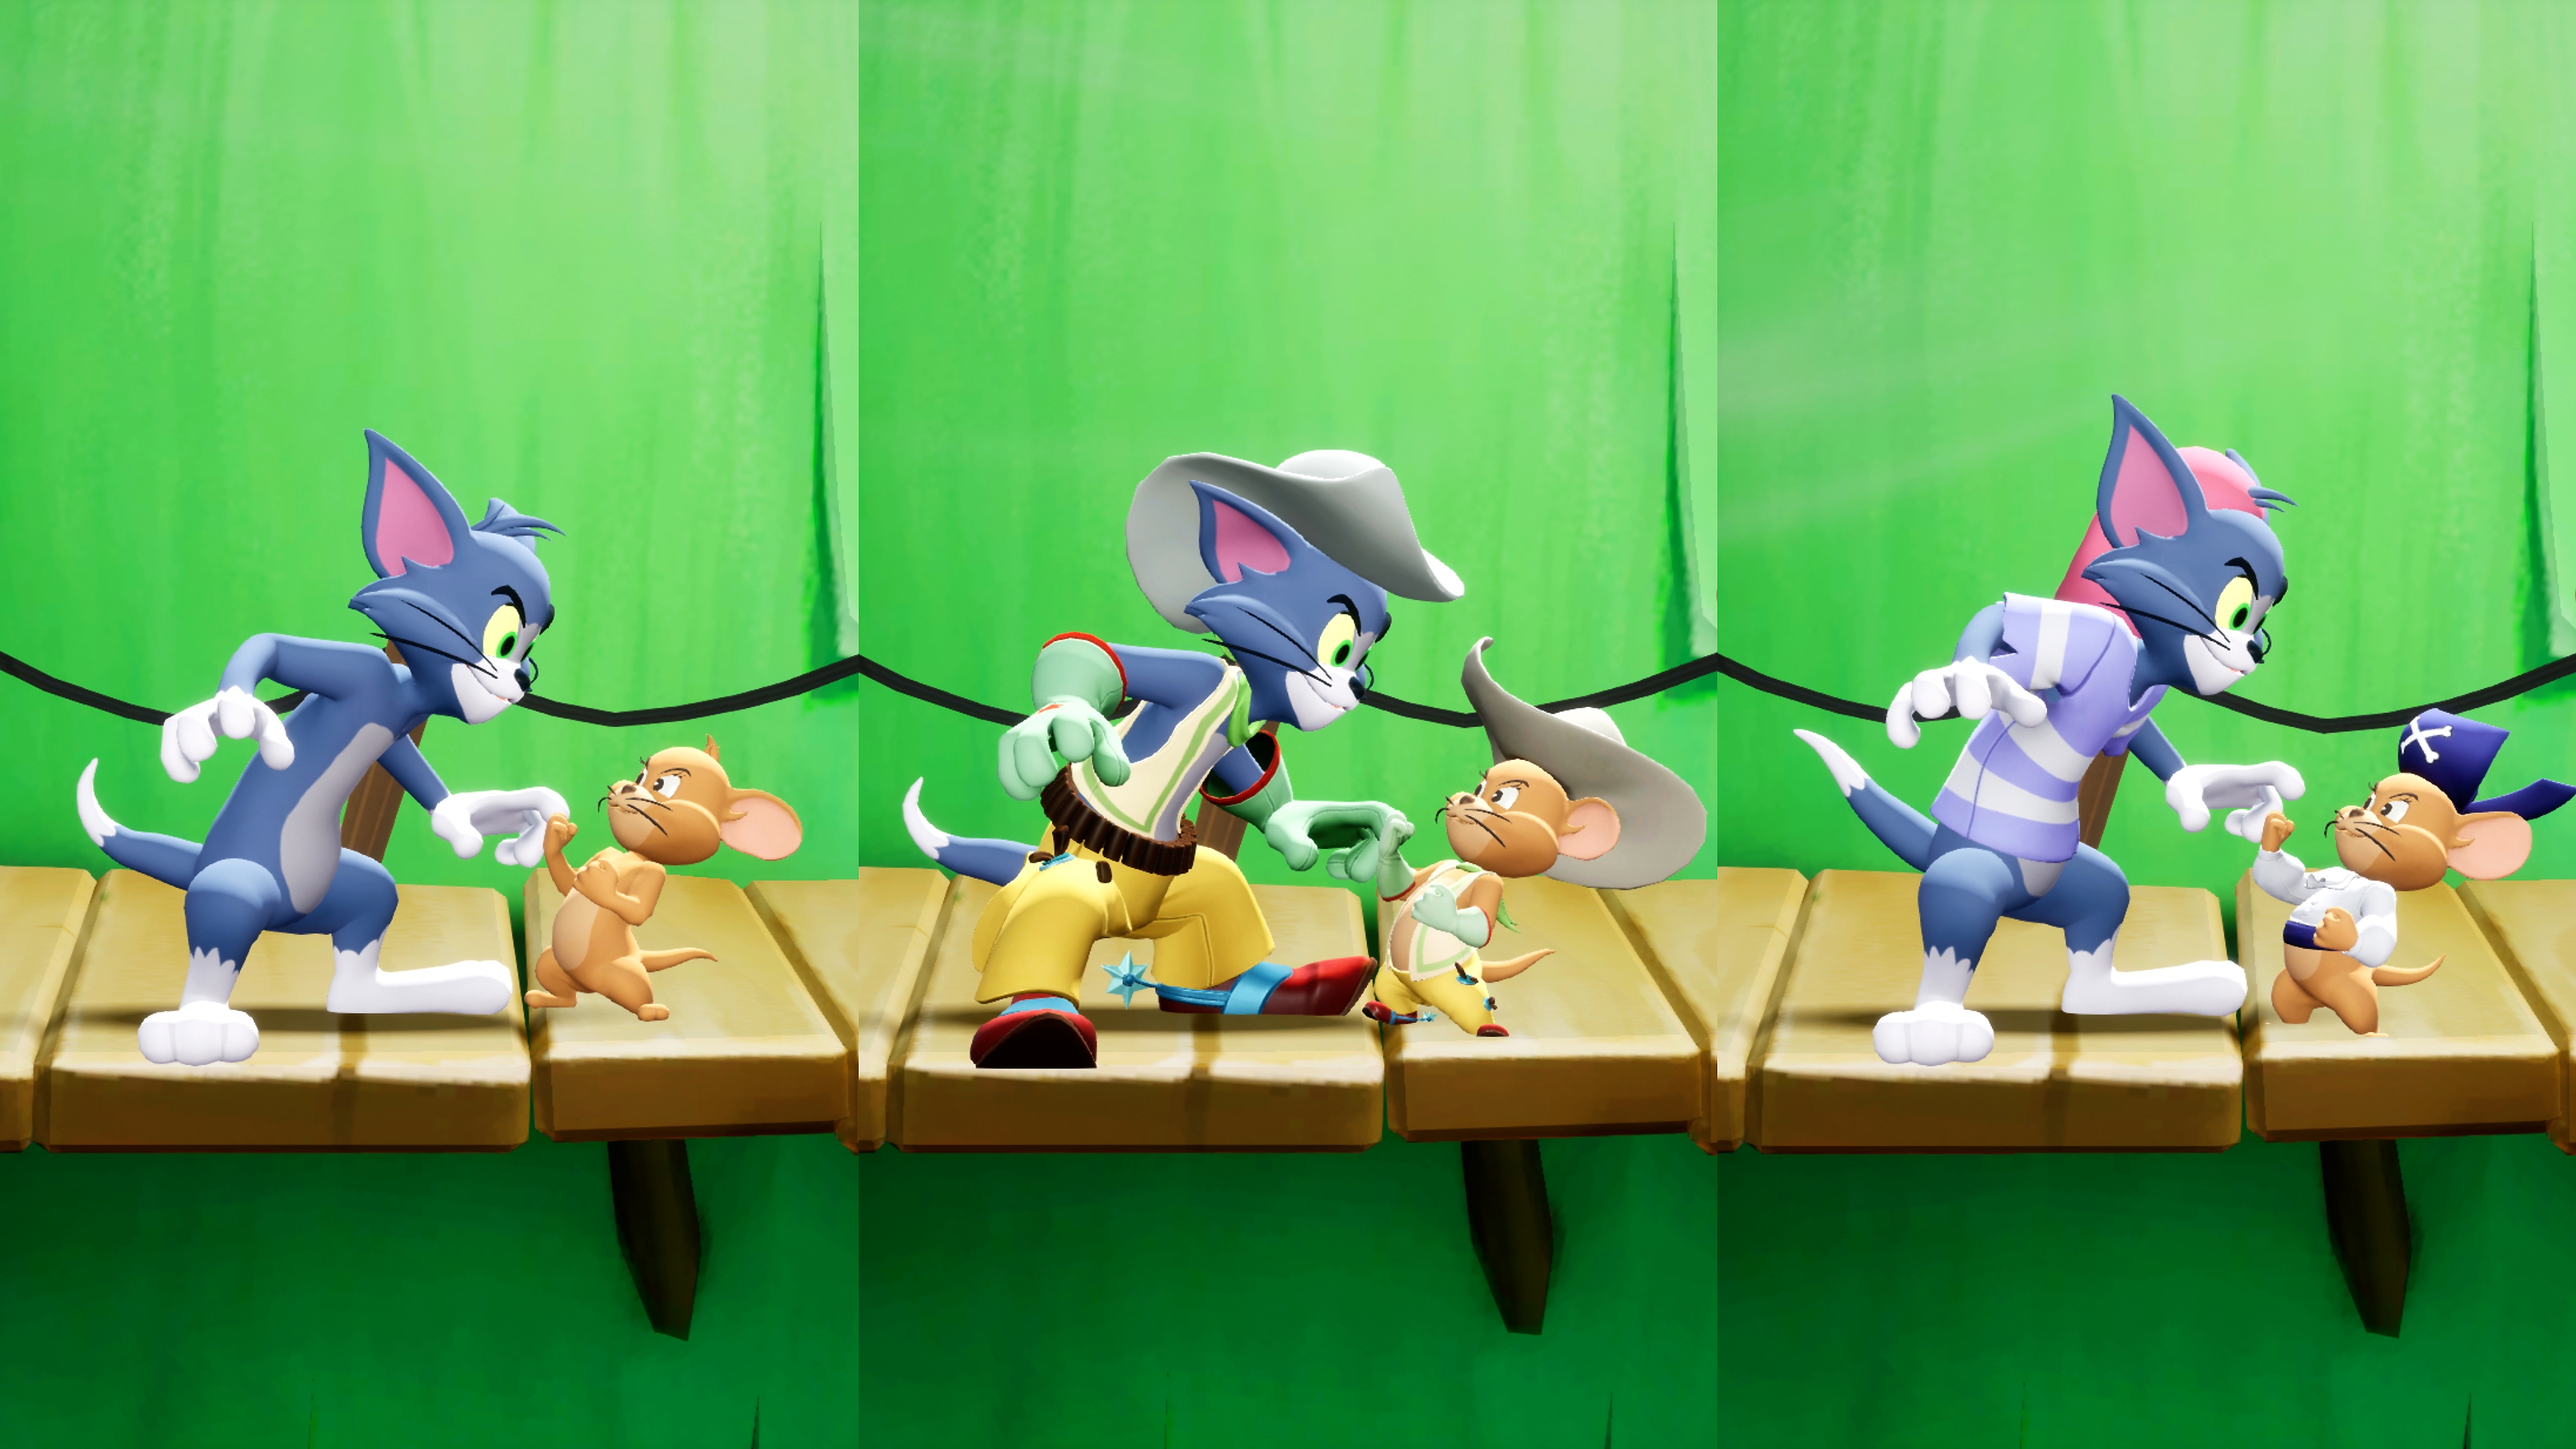 لقطة شاشة للعبة MultiVersus تعرض أزياء متنوعة لـ Tom و Jerry